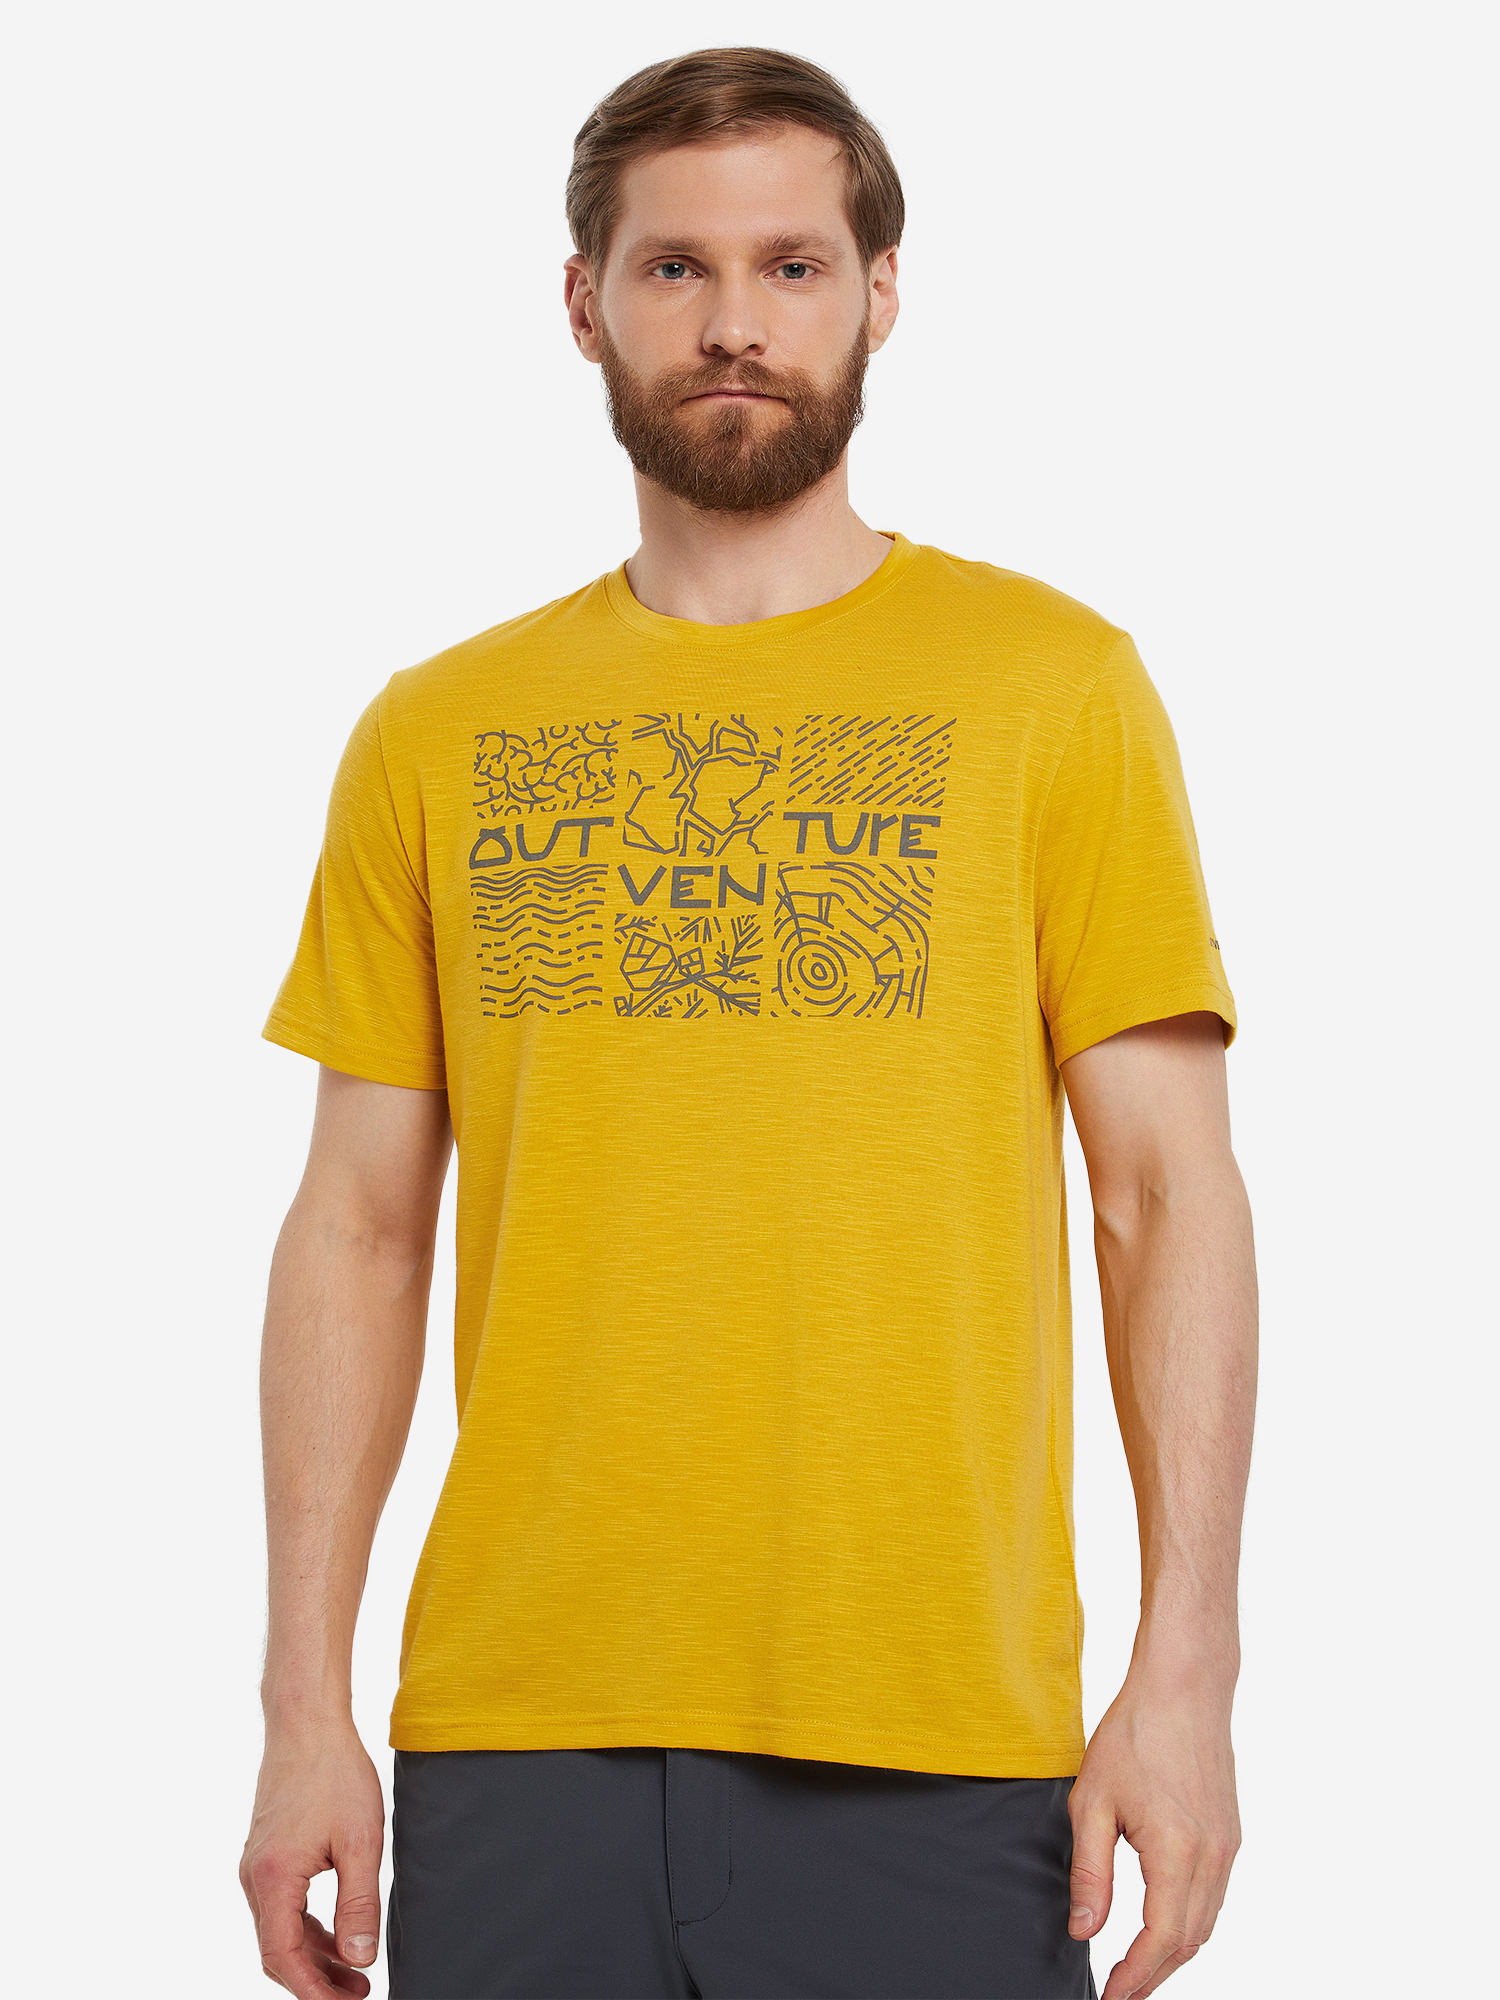 Футболка мужская Outventure, Желтый футболка мужская outventure желтый